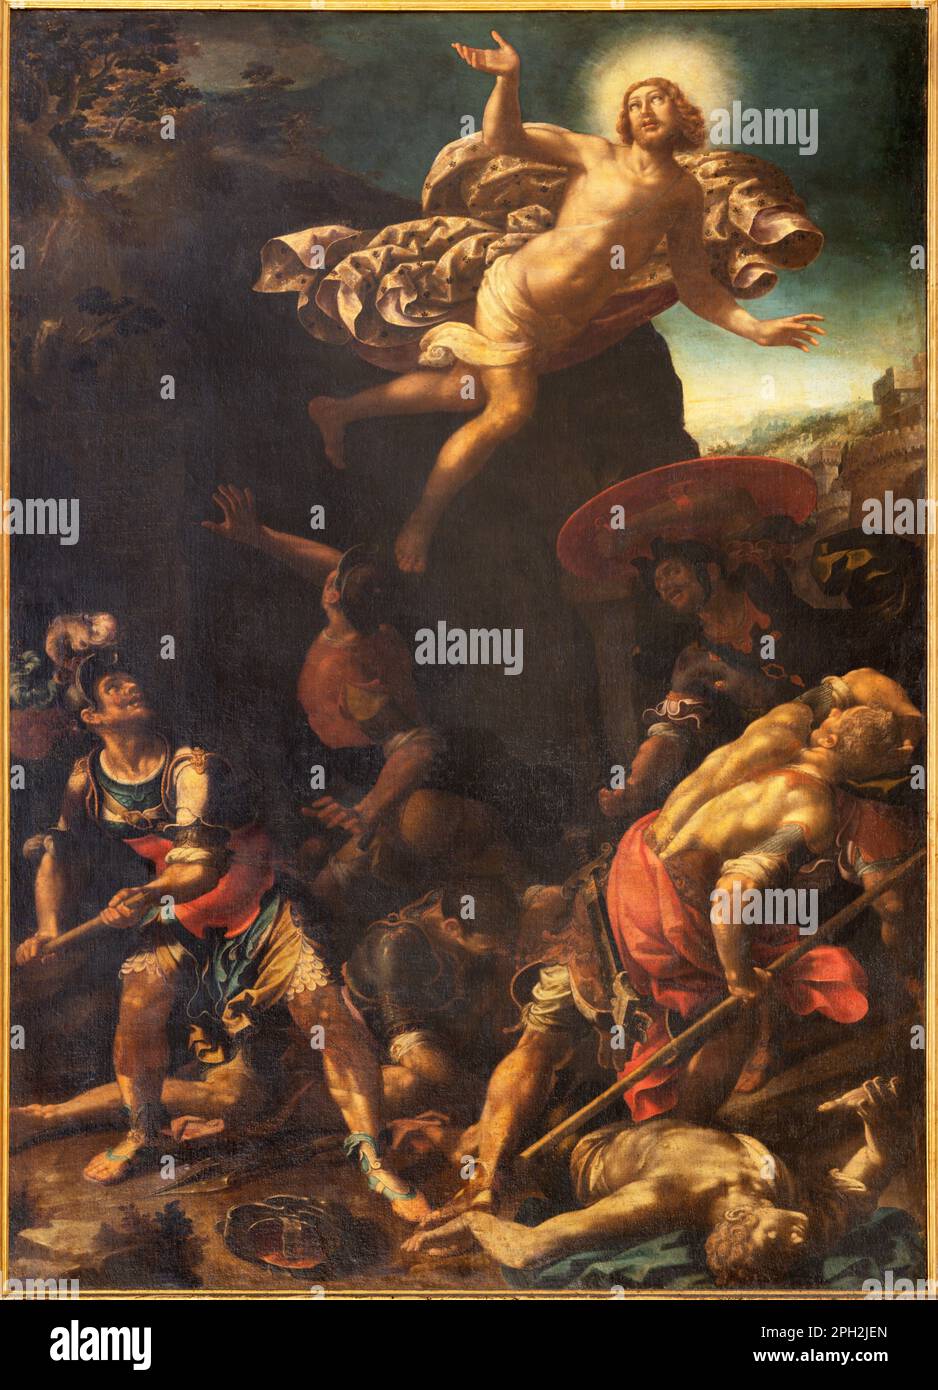 GENUA, ITALIEN - 7. MÄRZ 2023: Das Gemälde der Auferstehung in der Kirche Basilica di Santa Maria Assunta von Aurelio Lomi Gentileschi (1556-1624). Stockfoto